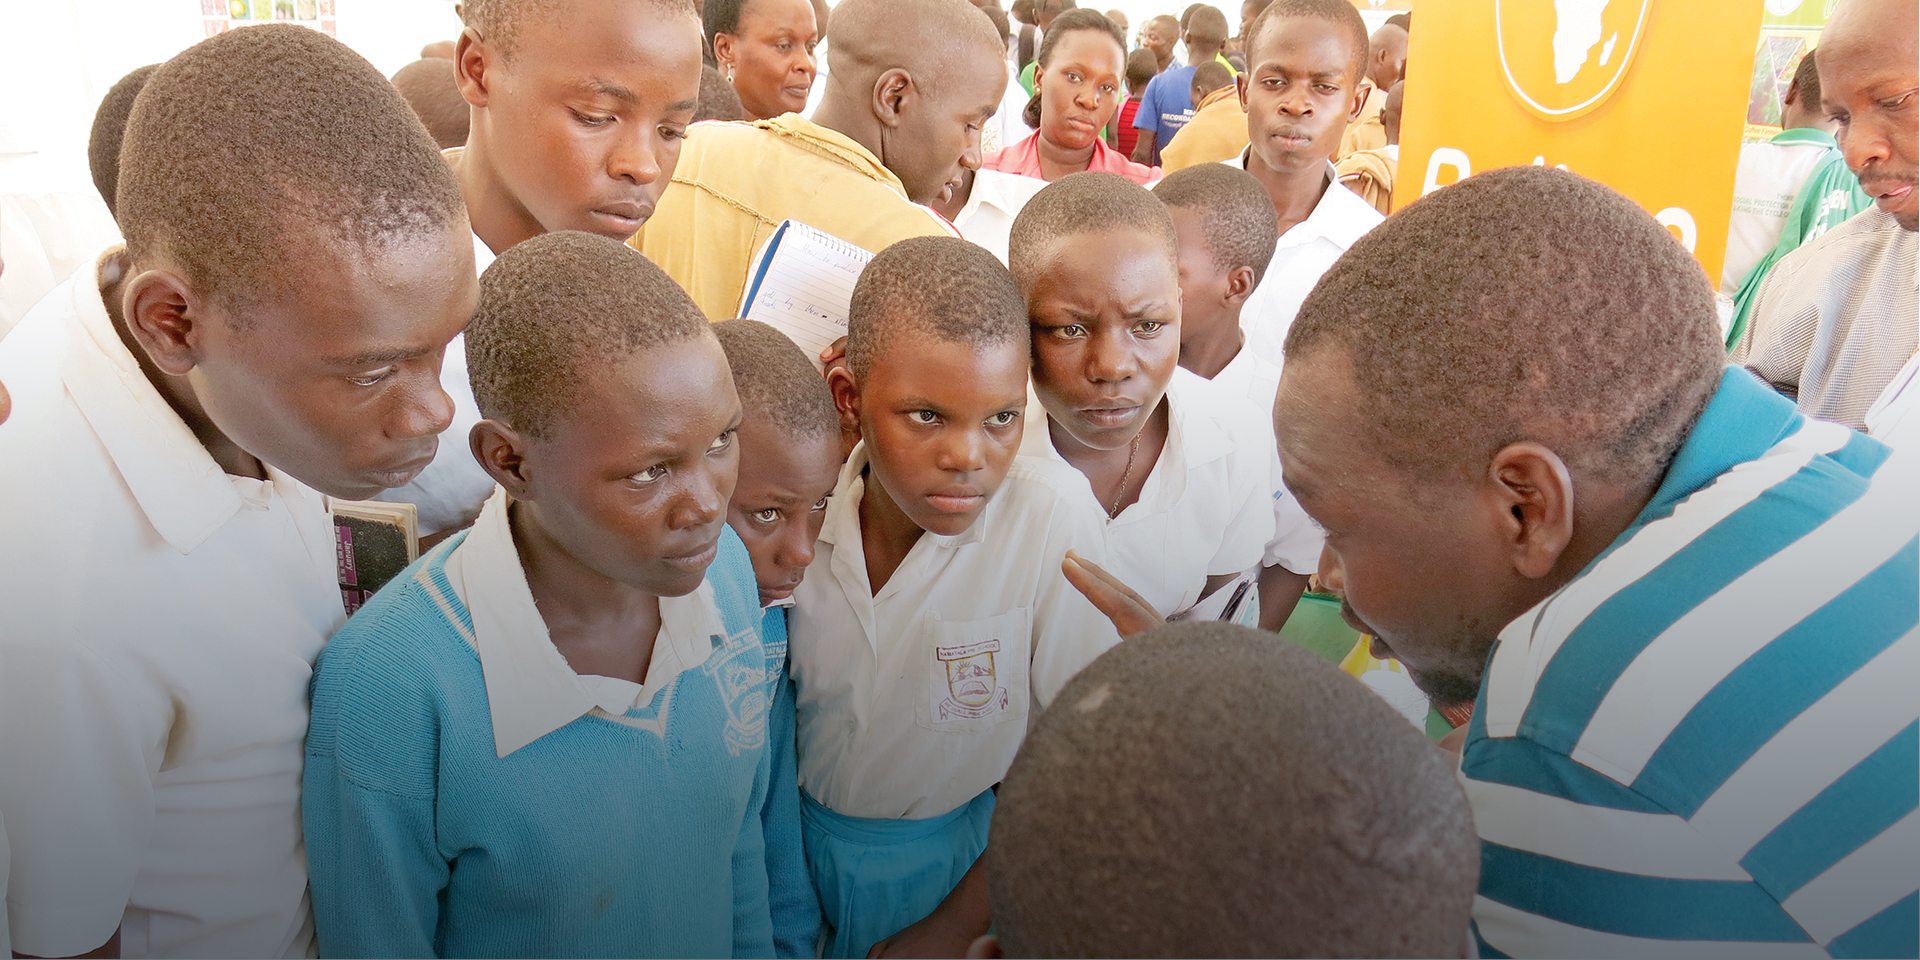 A man speaking to several schoolchildren listening intently.